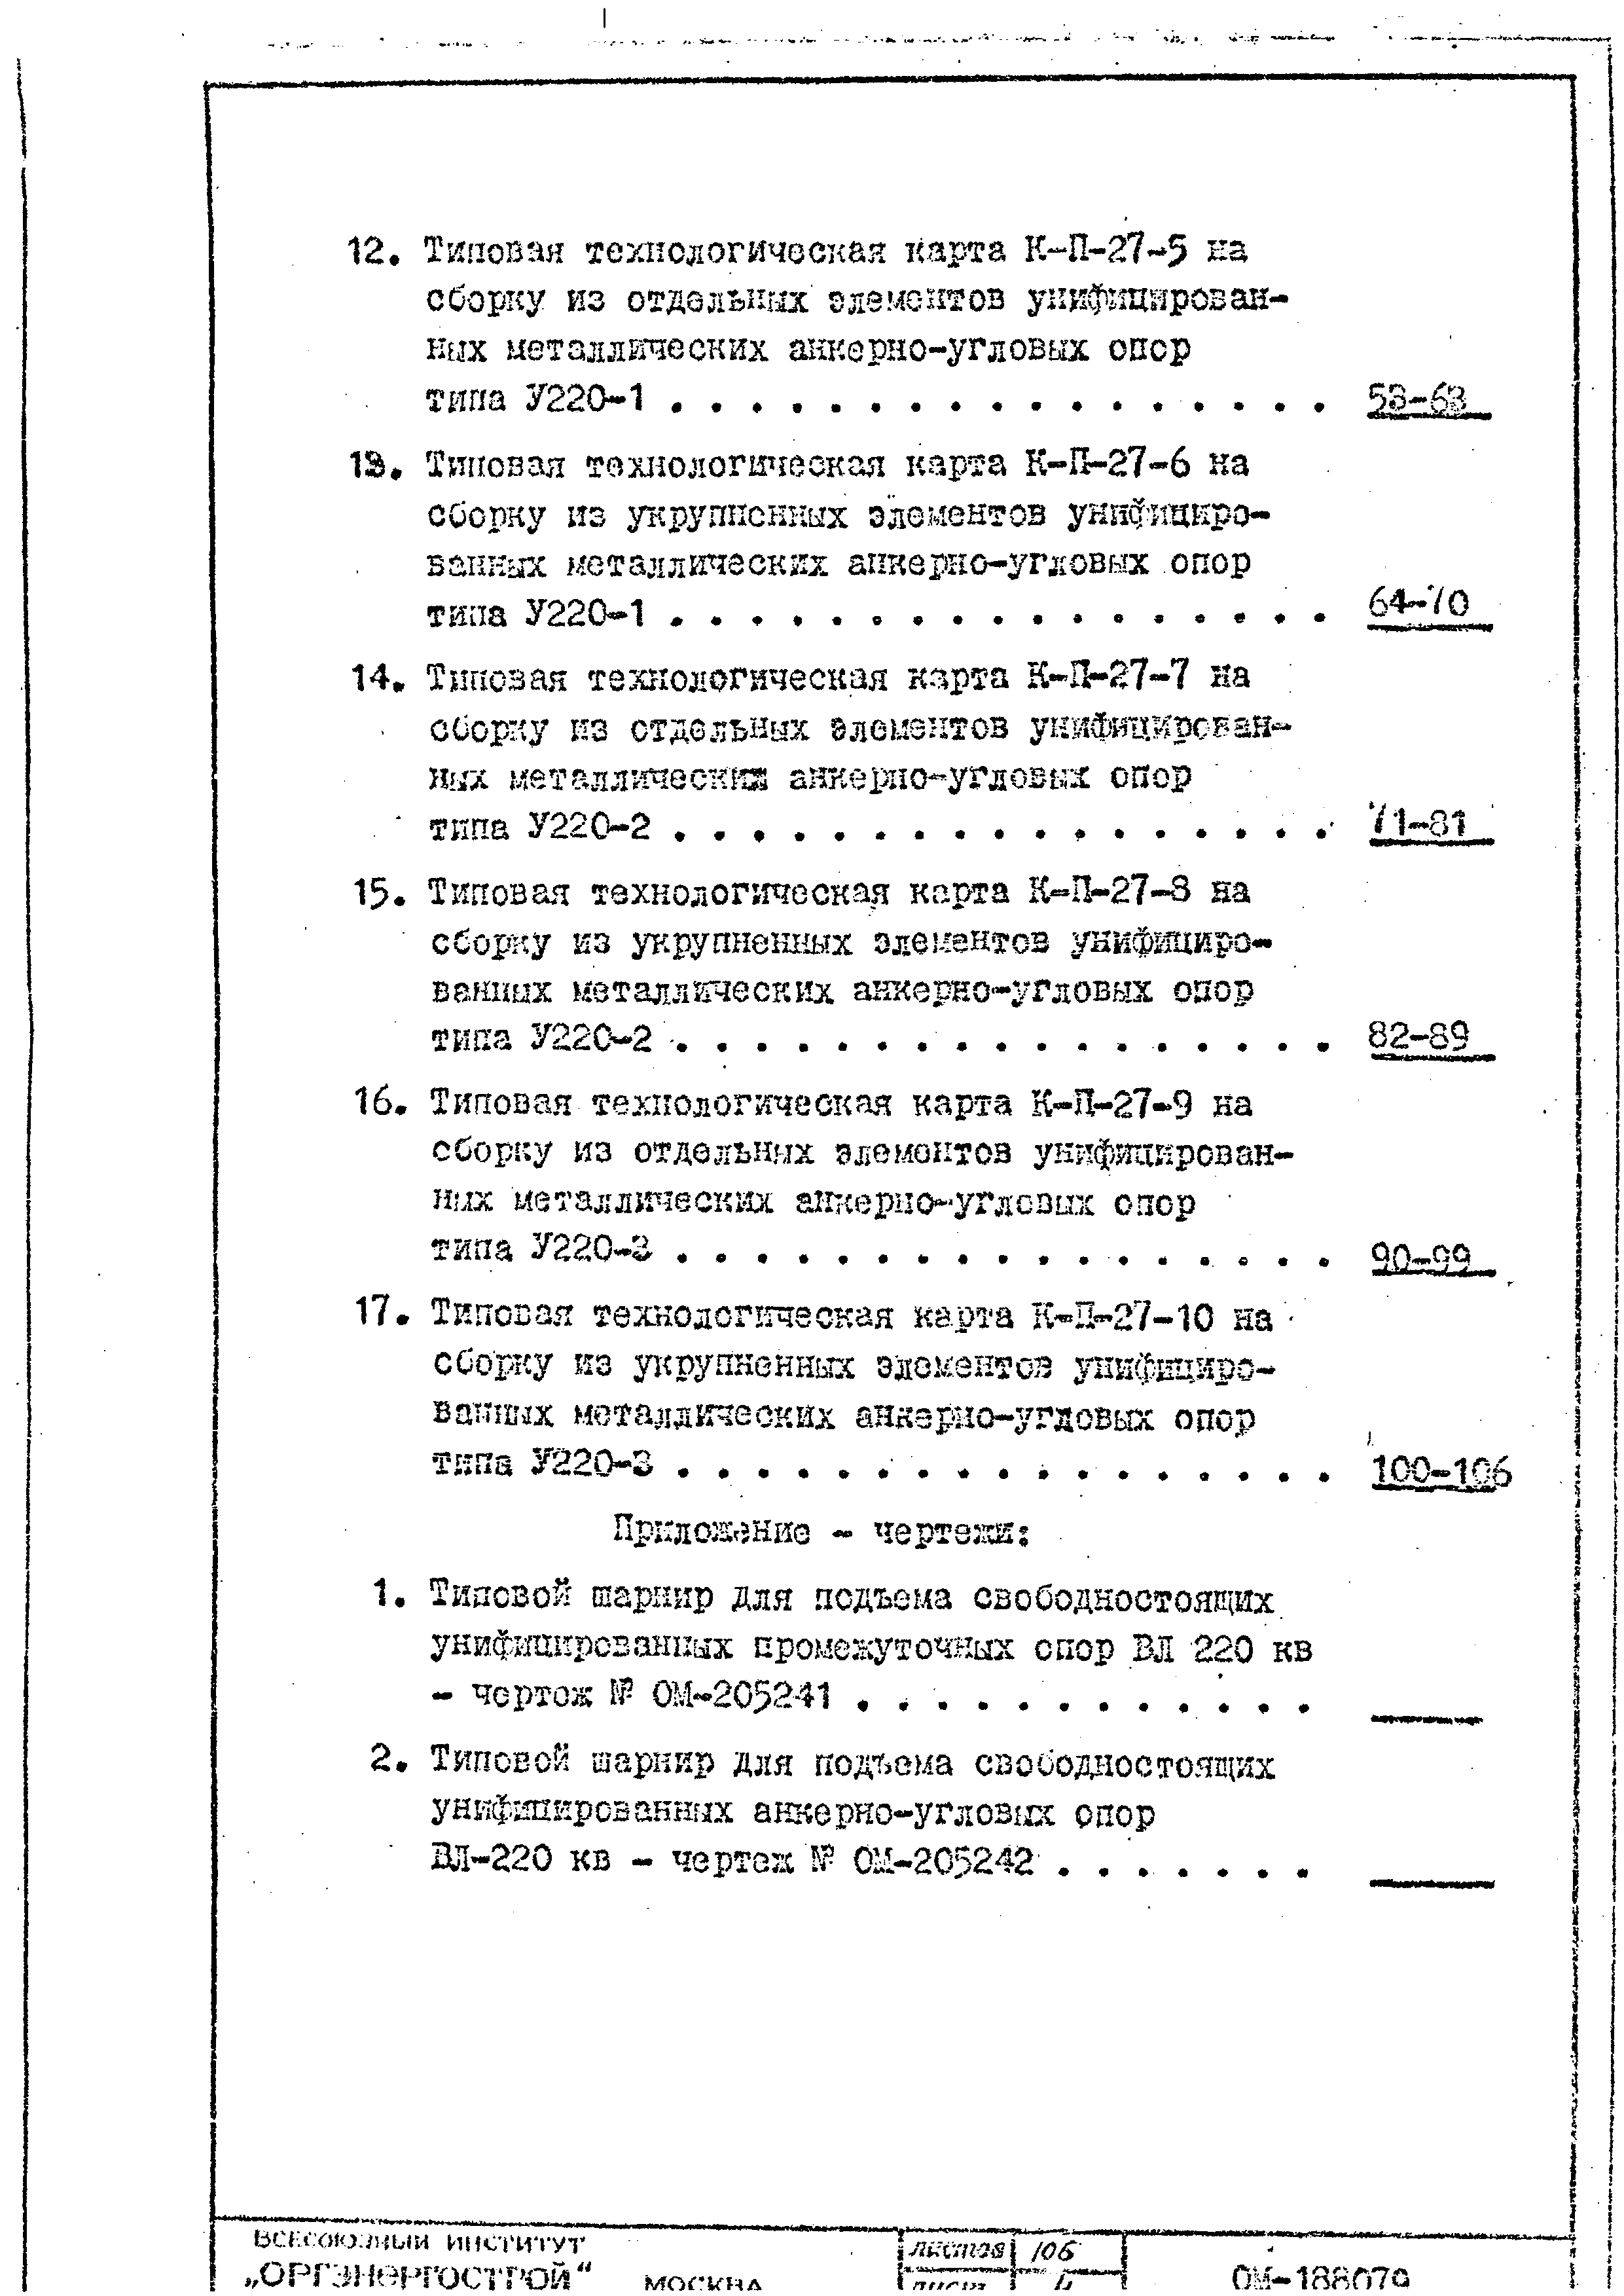 ТТК К-II-27-3